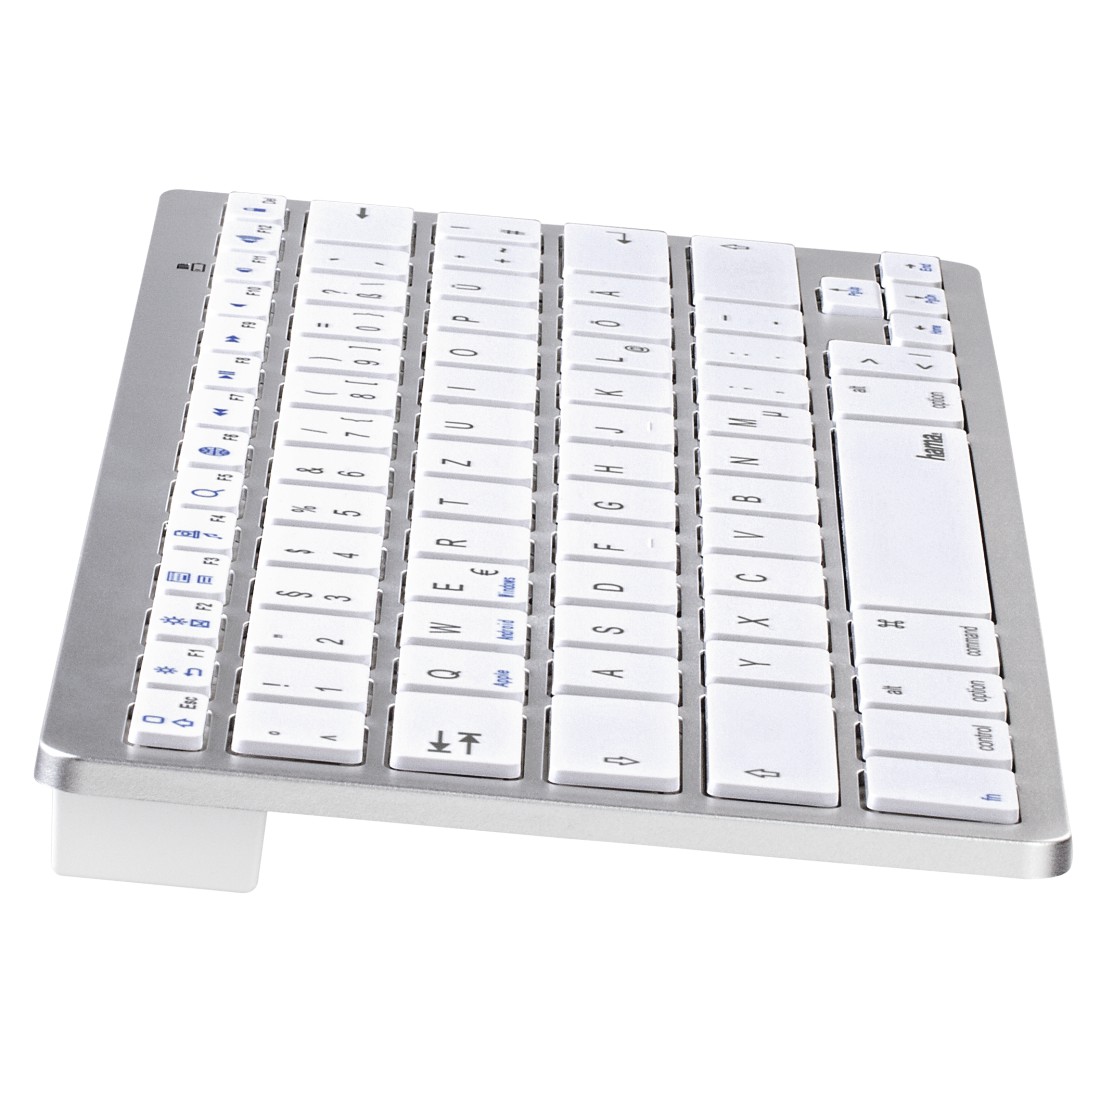 00108393 Hama Bluetooth®-Tastatur "KEY4ALL X510", Silber/Weiß | hama-suisse .ch